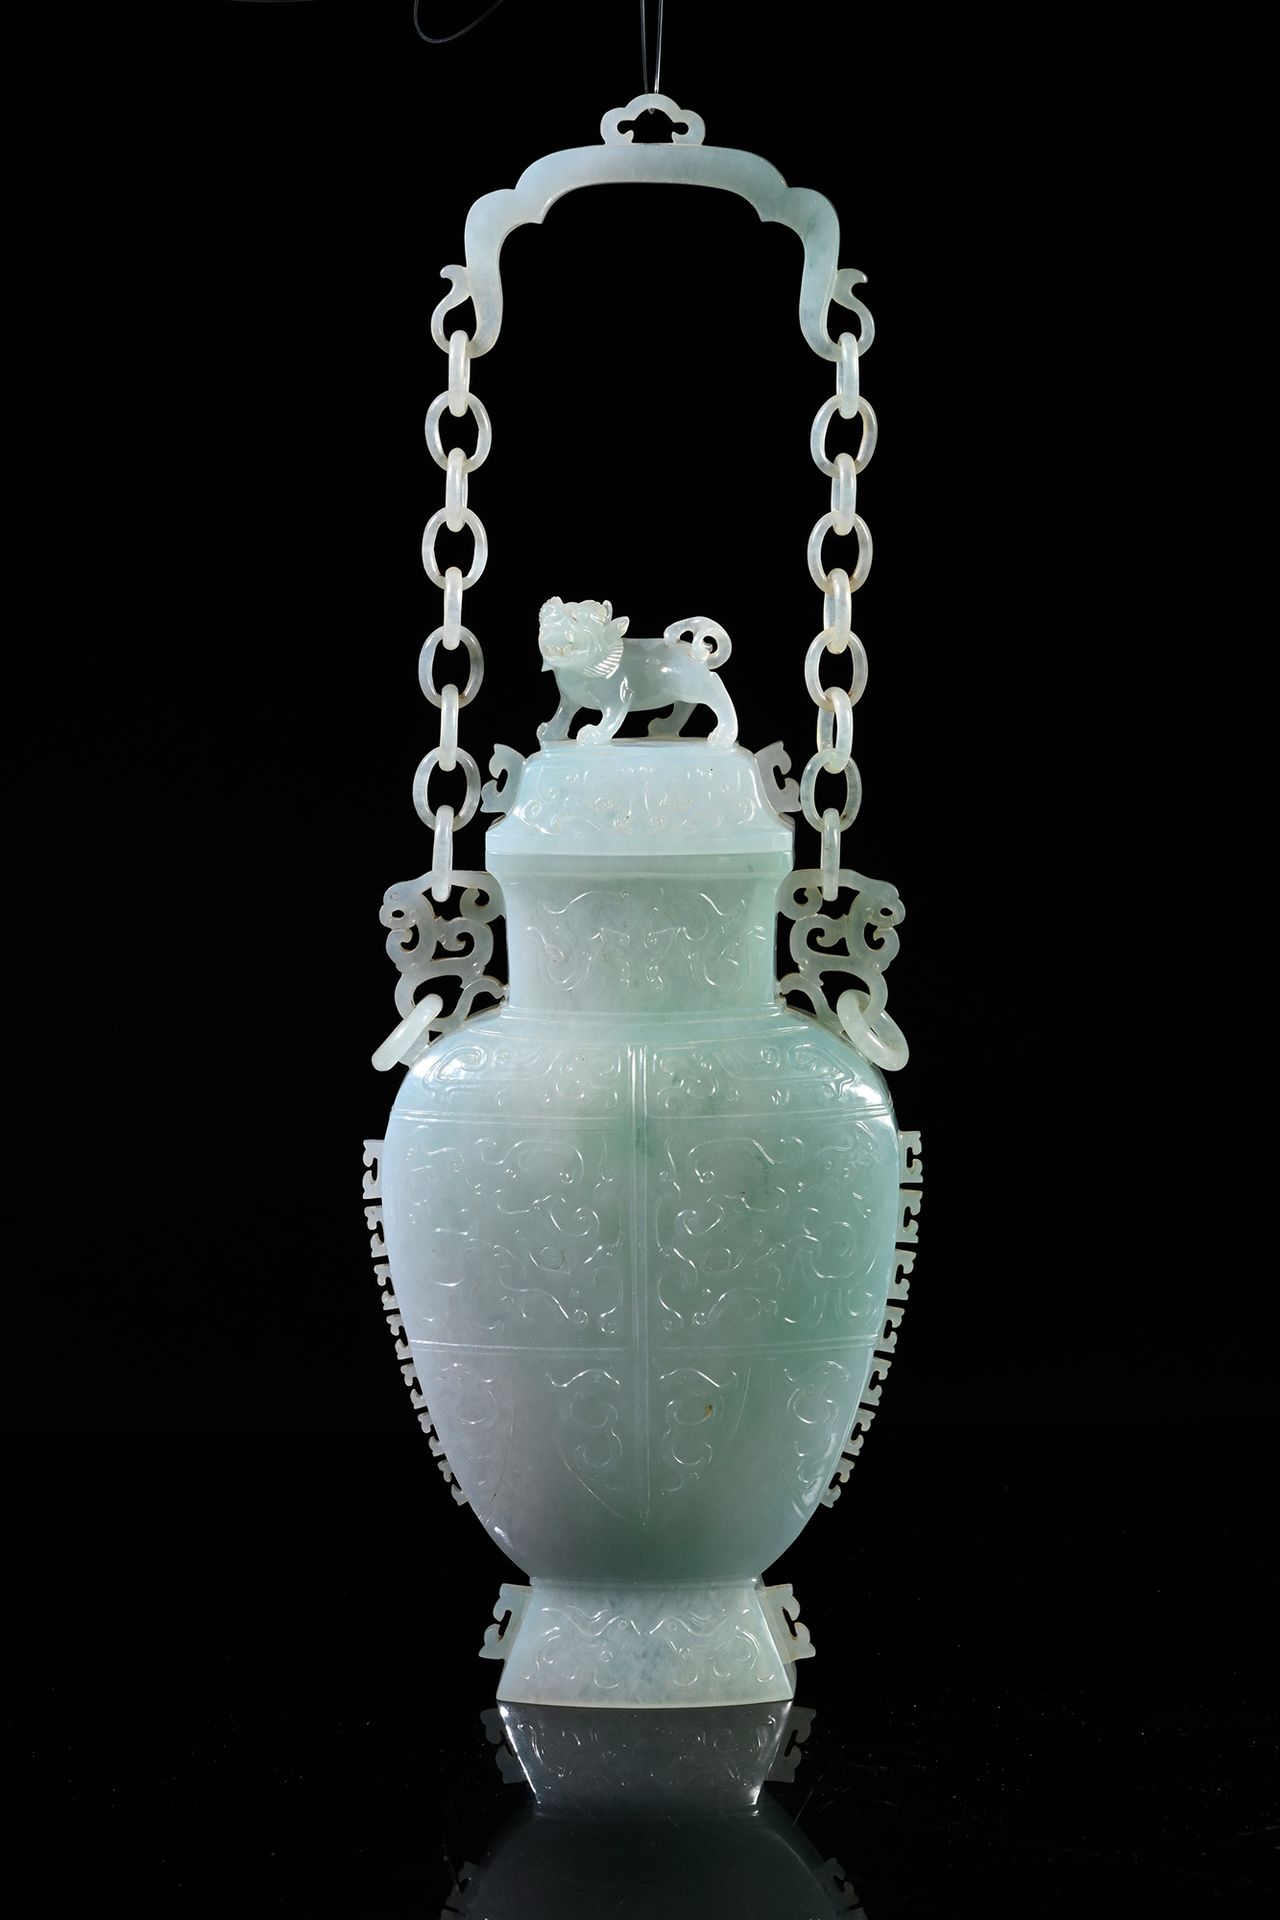 CHINE, XXe siècle 罕见的翡翠包浆花瓶，瓶身以浅浮雕的方式精致地装饰饕餮面具、香蕉叶和旗袍，盖子以高浮雕的方式形成一个站立的璧人，并有一个挂链。&hellip;